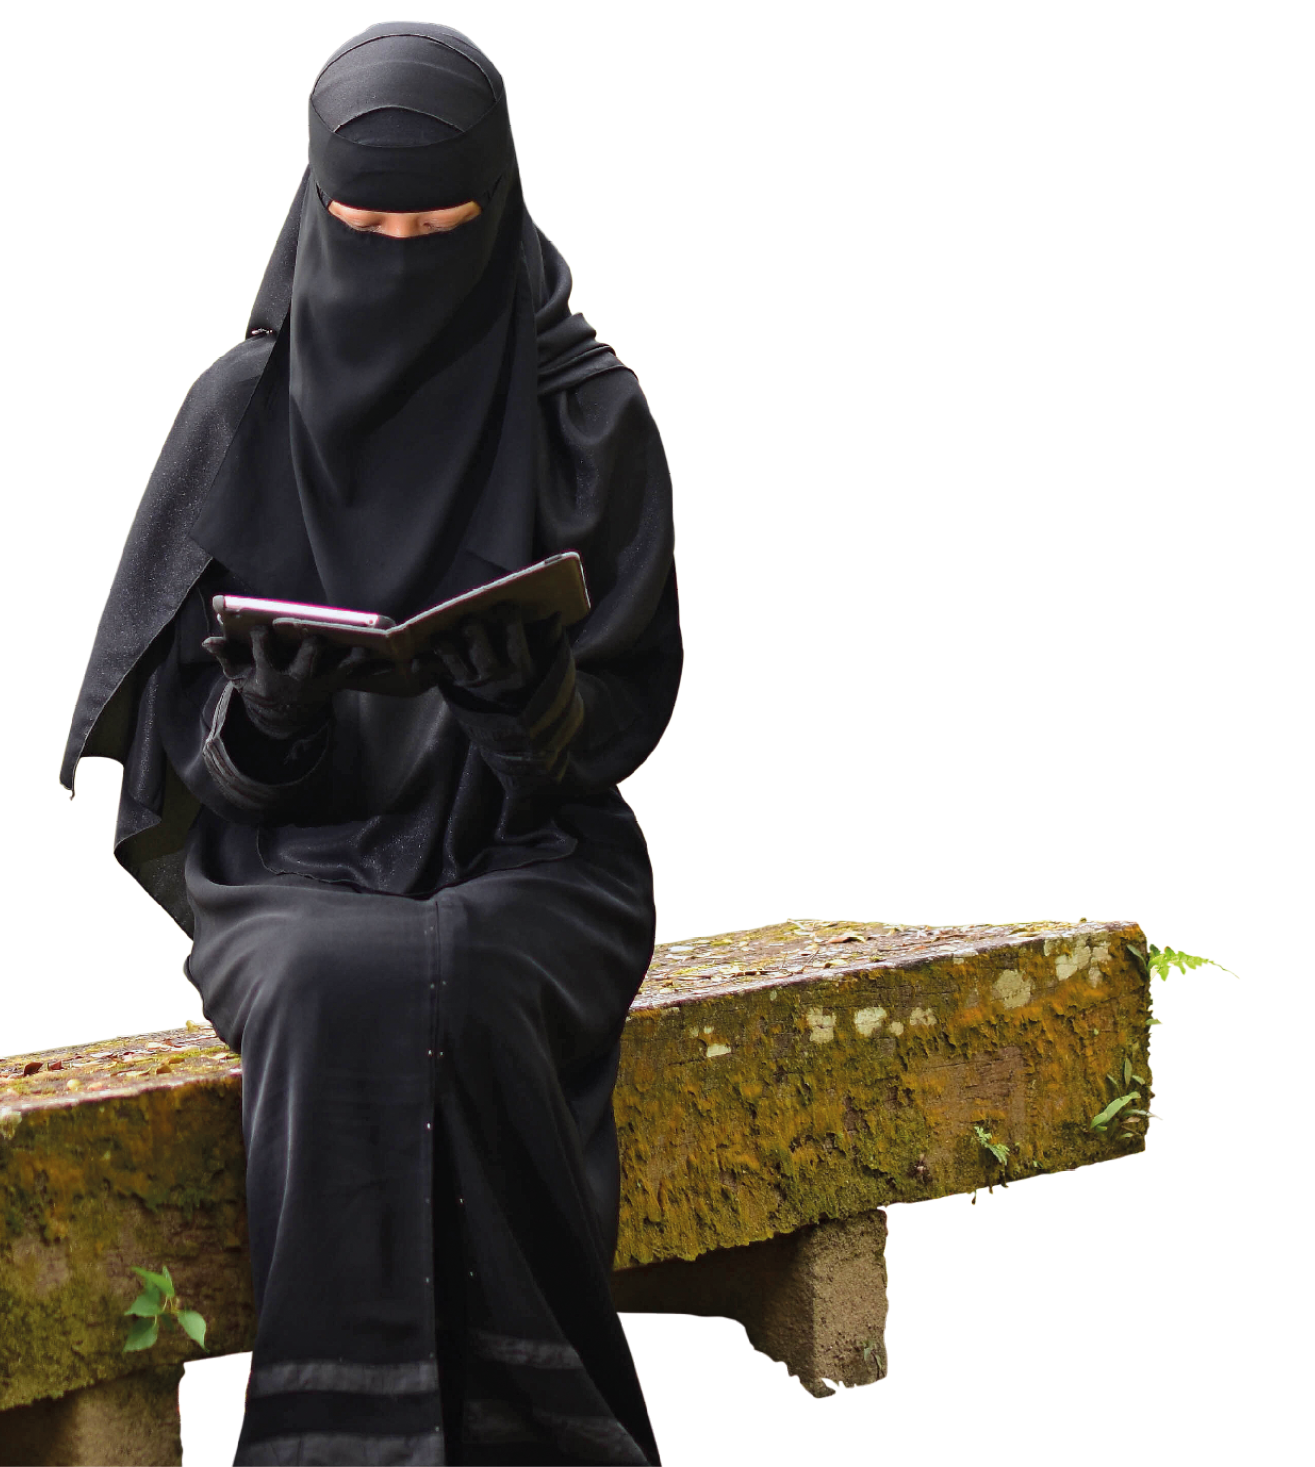 Fotografia. Uma mulher sentada sobre um banco de cimento de cor marrom. Ela usa roupa de cor preta que cobre todo seu corpo, inclusive a cabeça. Ela usa par de luvas da mesma cor. A mulher olha para baixo e segura nas mãos um livro de capa preta.